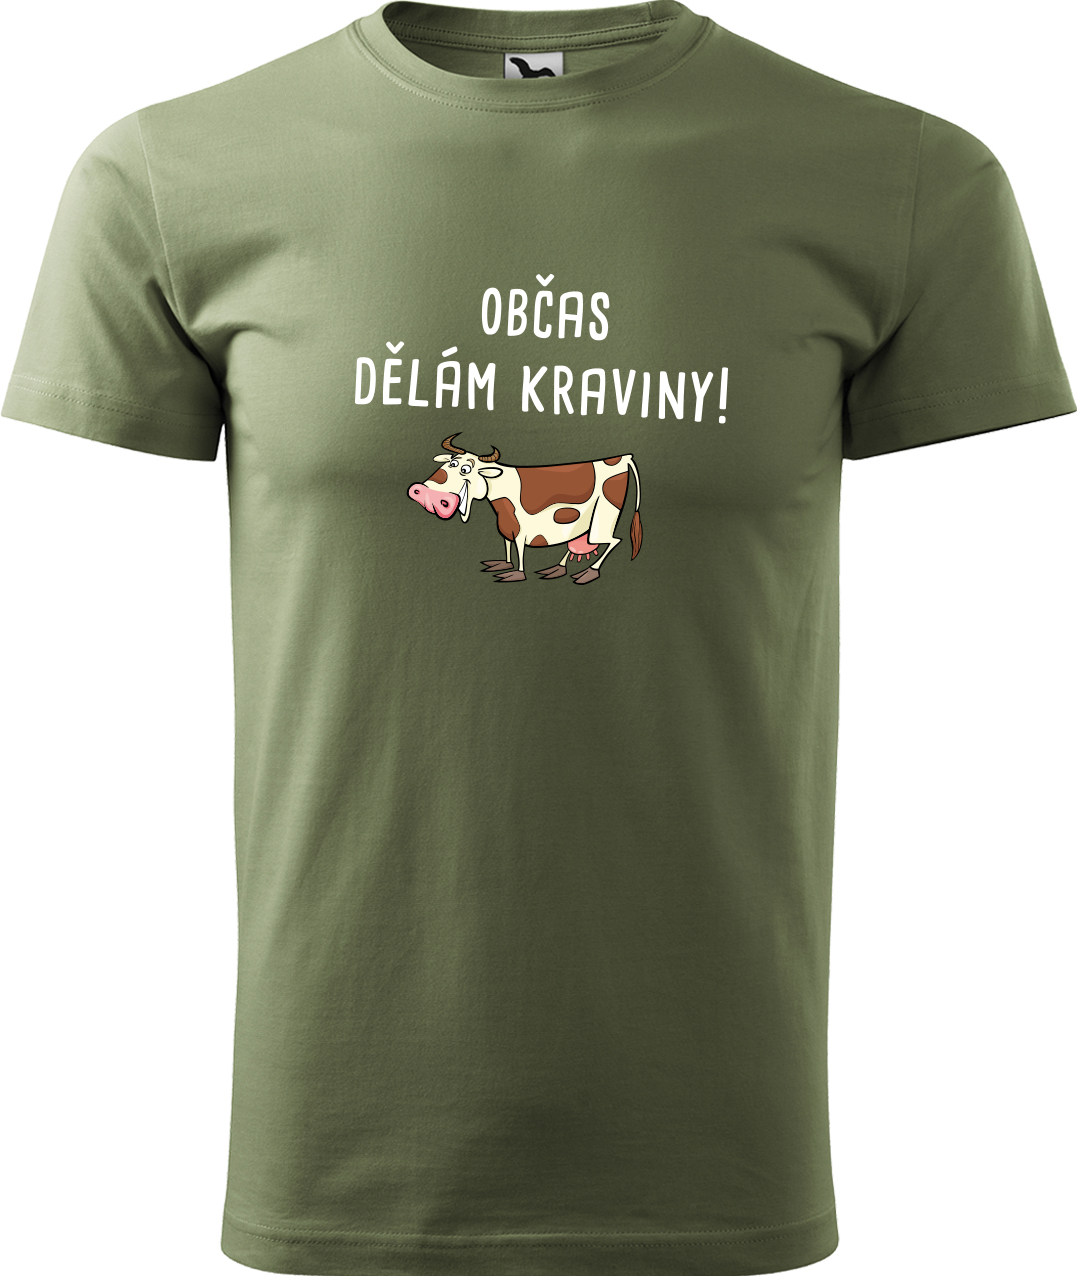 Pánské tričko s krávou - Občas dělám kraviny Velikost: M, Barva: Světlá khaki (28), Střih: pánský